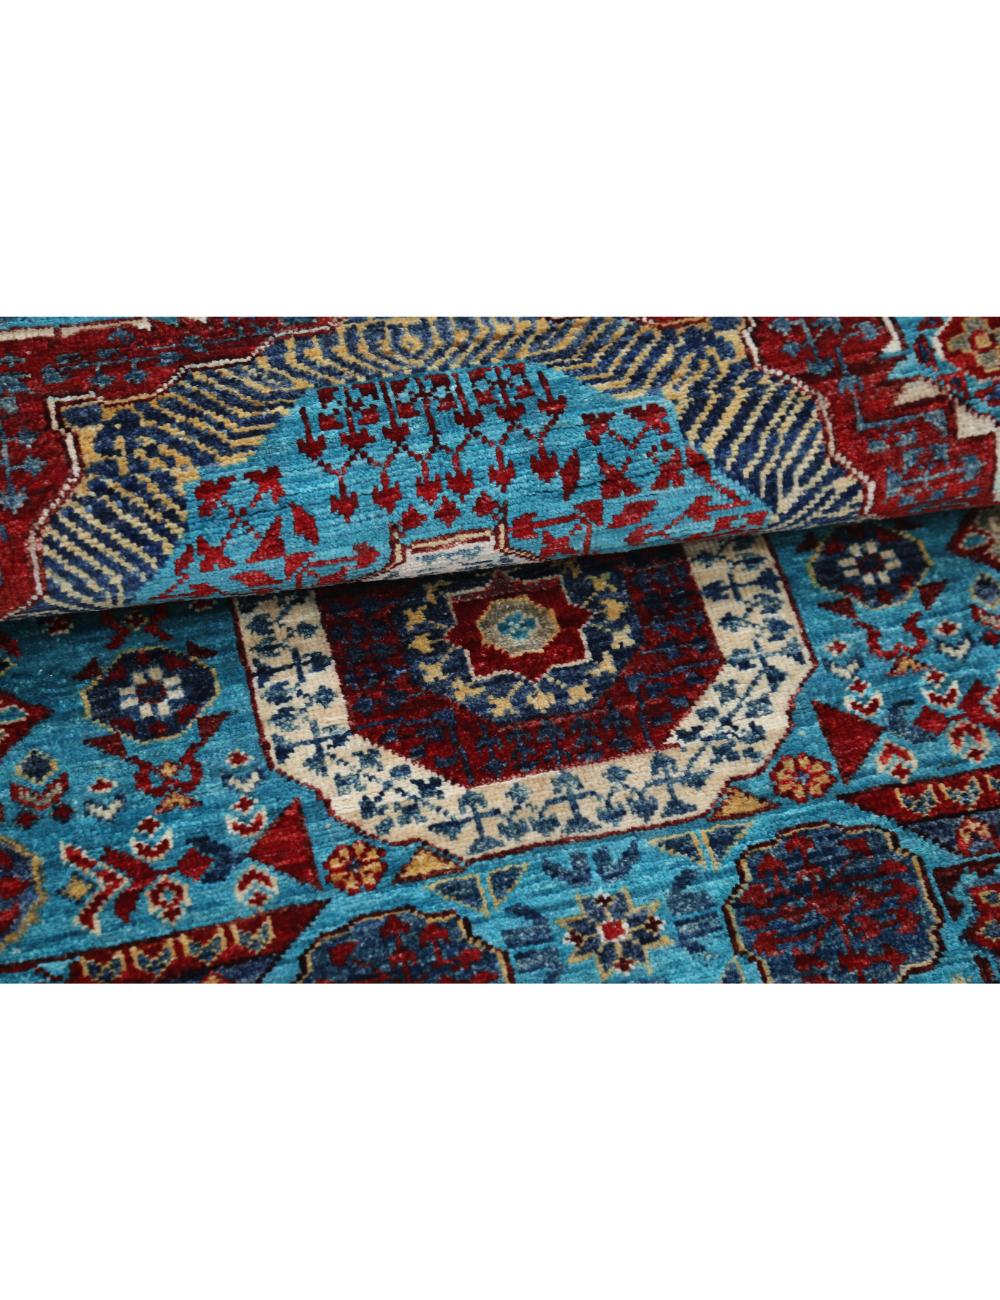 Hand Knotted Mamluk Wool Rug - 2'9'' x 9'8'' Arteverk Arteverk Rugs